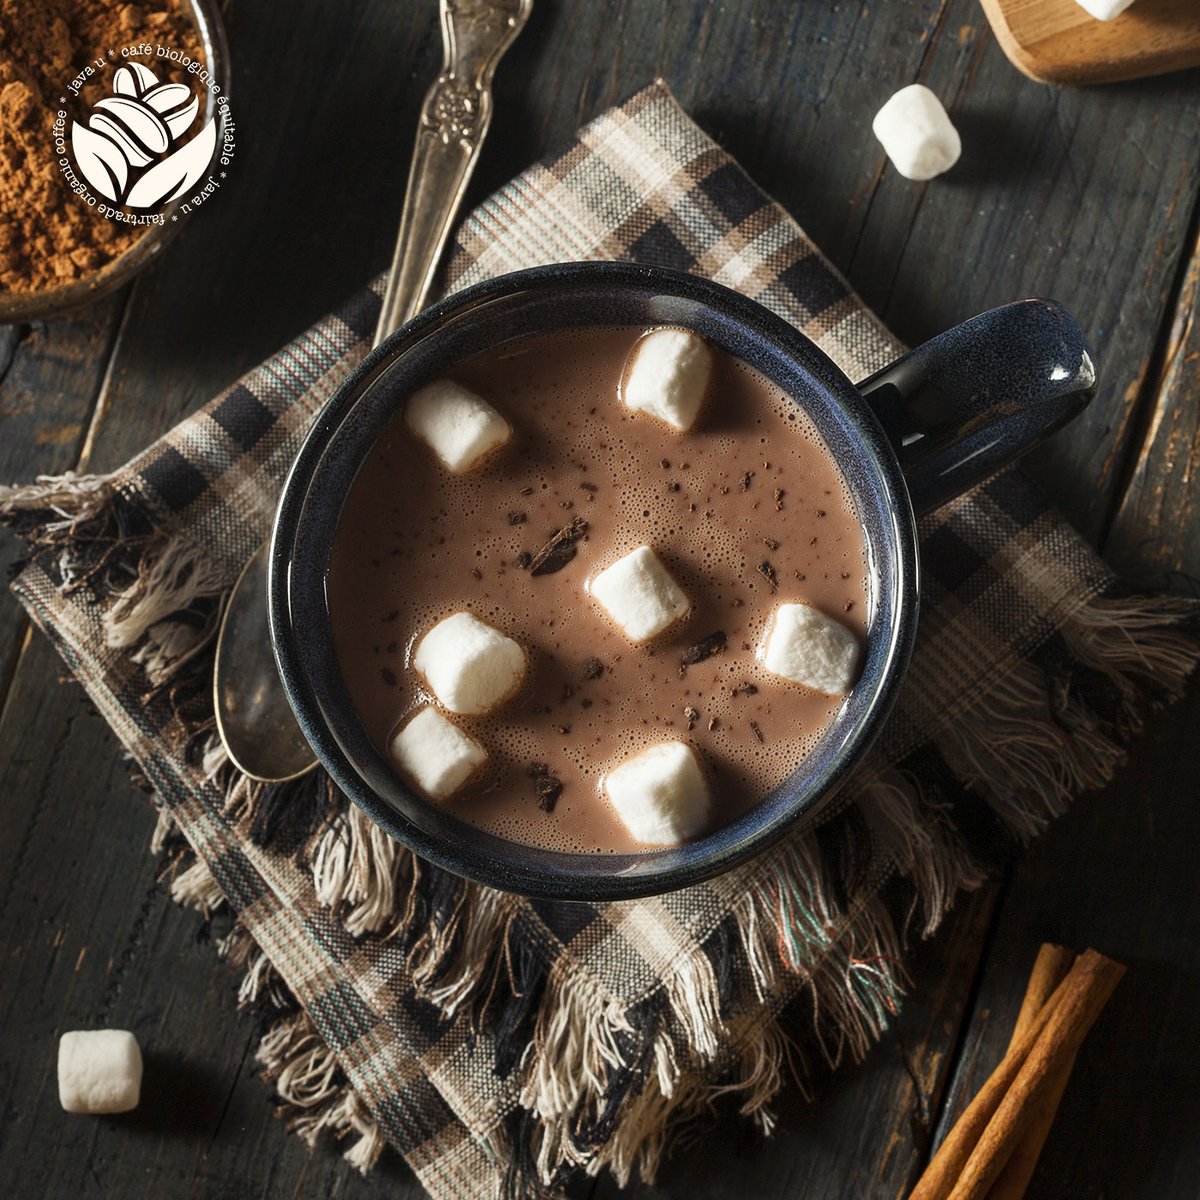 A hot chocolate is the best comfort drink on days such as these ☁️💤🛌

Un chocolat chaud est la meilleure source de réconfort pour les journées comme aujourd'hui ☁️💤🛌

#javau #fairtradeorganic #montreal #coffee #cafe #mtlcafe #fresh #comfortfood #hotchocolate #rainydays